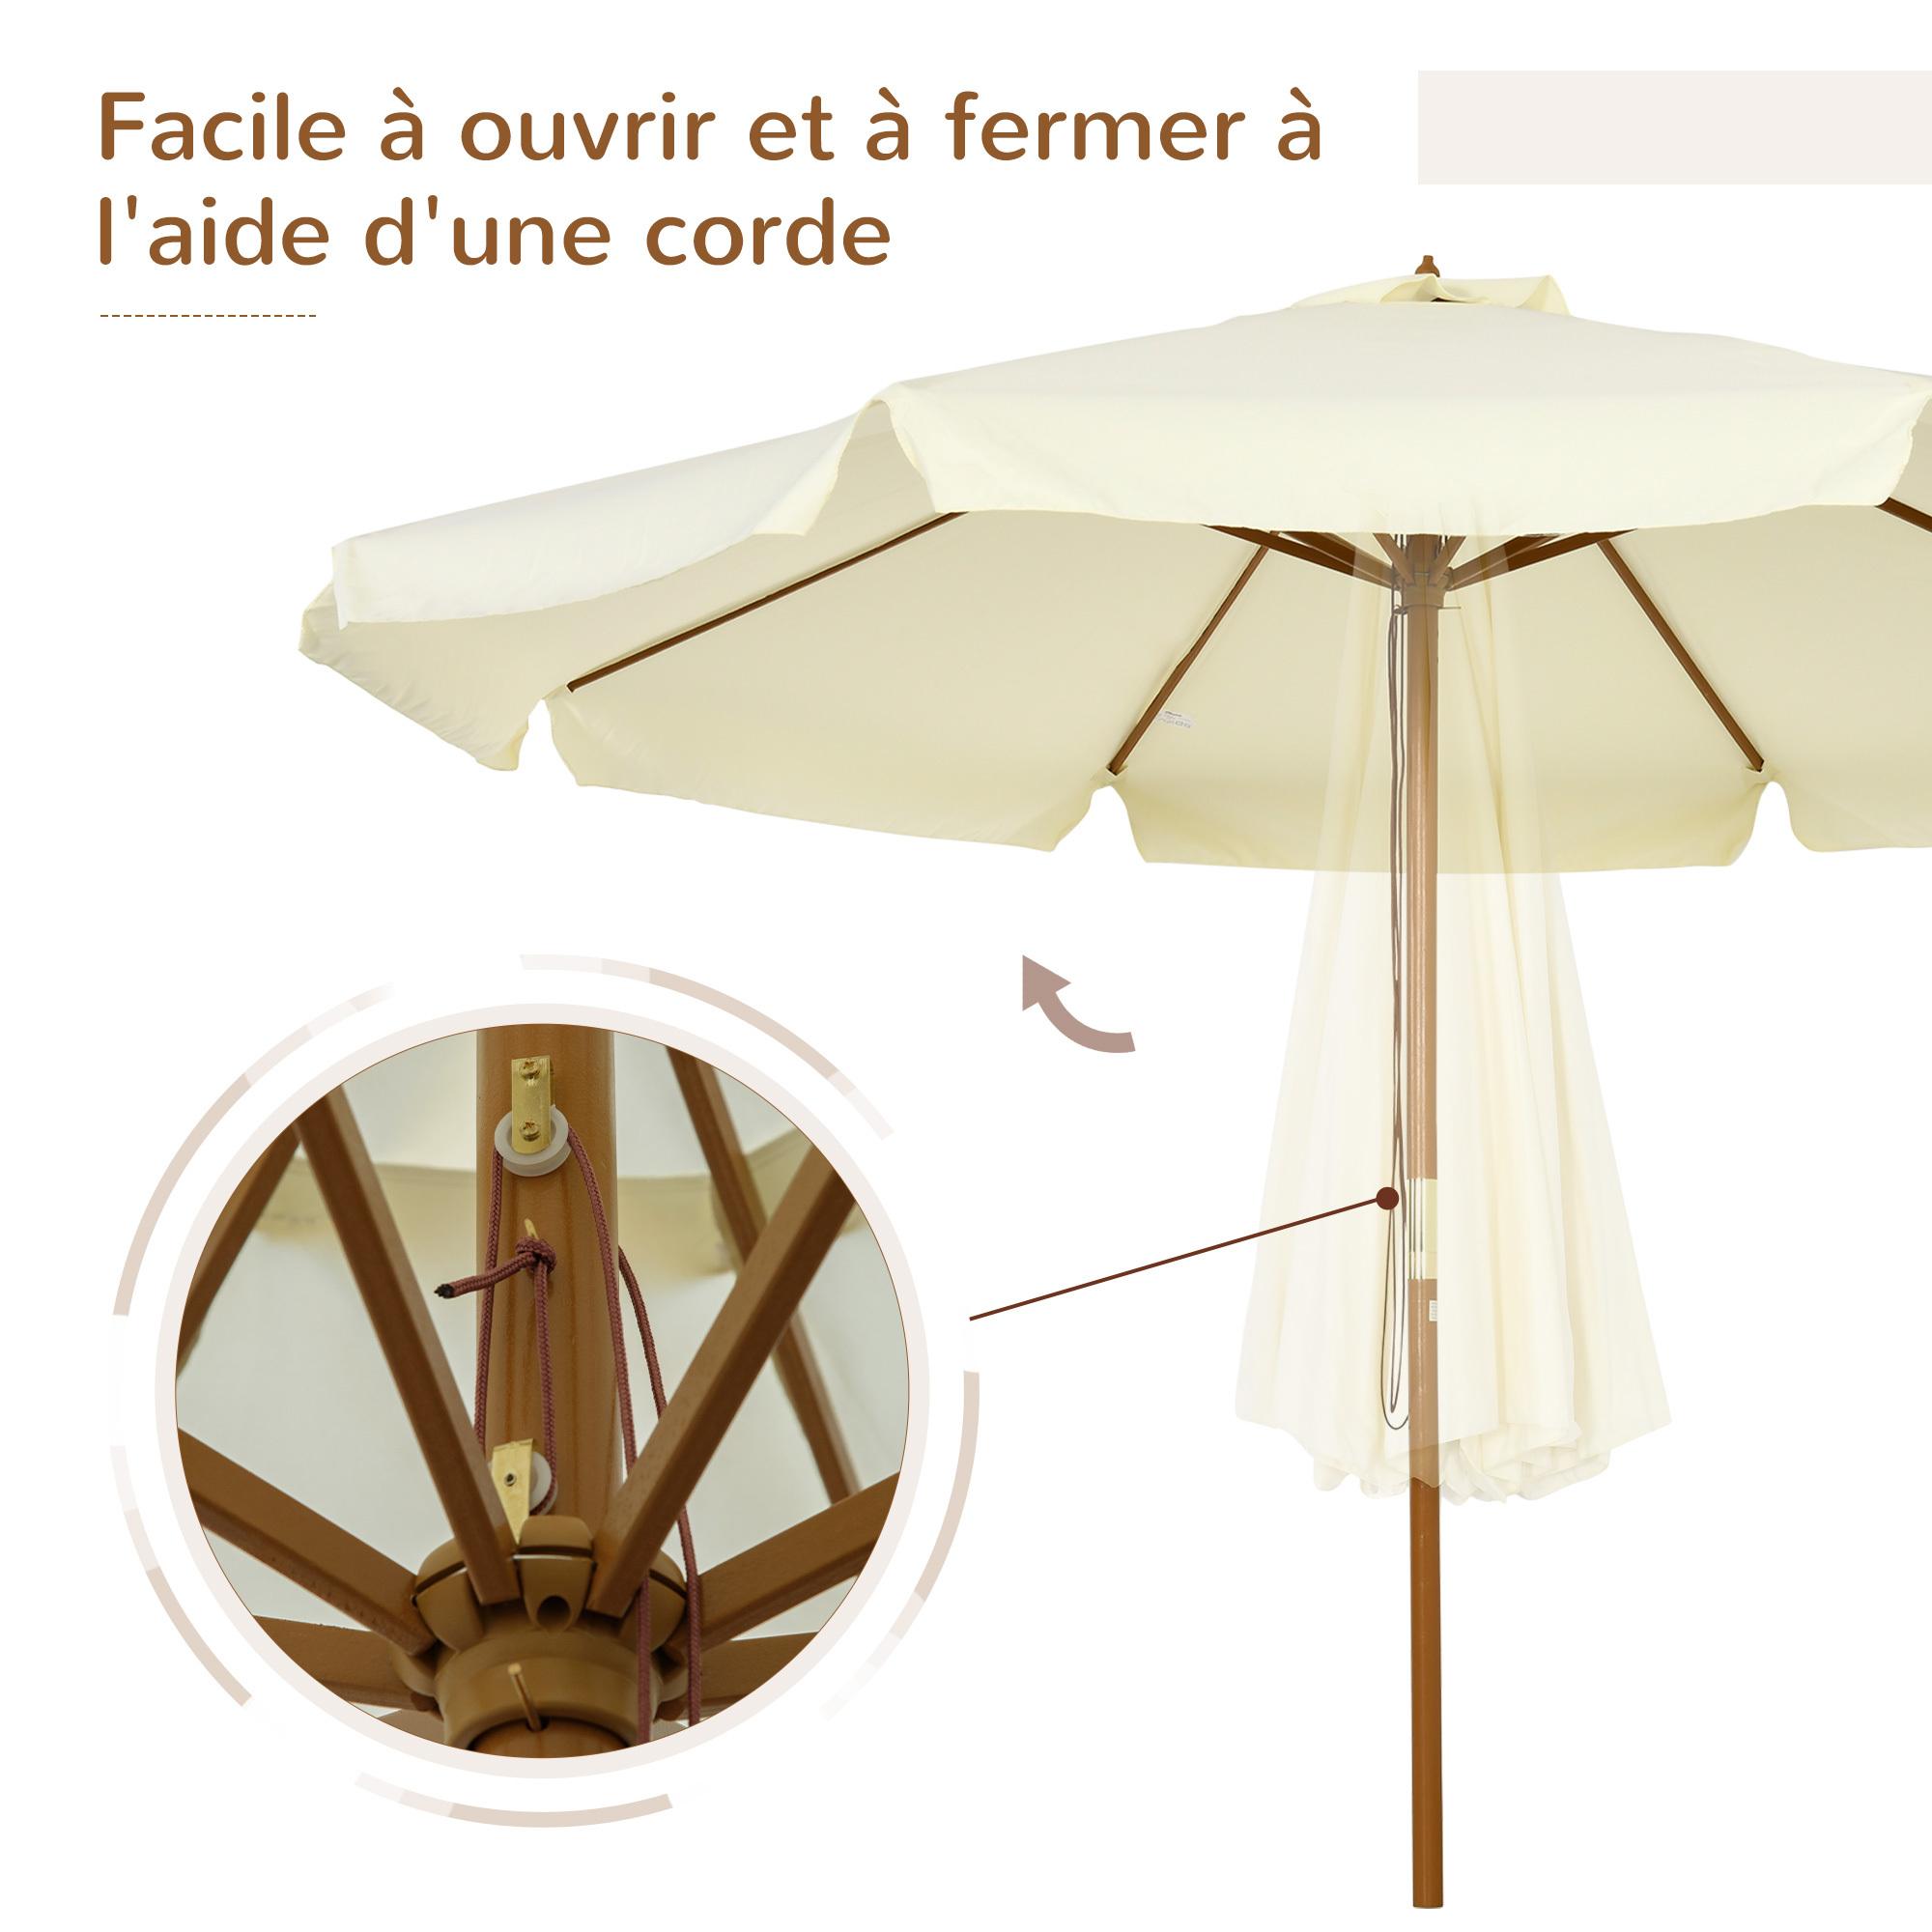 Parasol droit rond grande taille de jardin Ø 3,25 x 2,5H m bois de bambou polyester beige